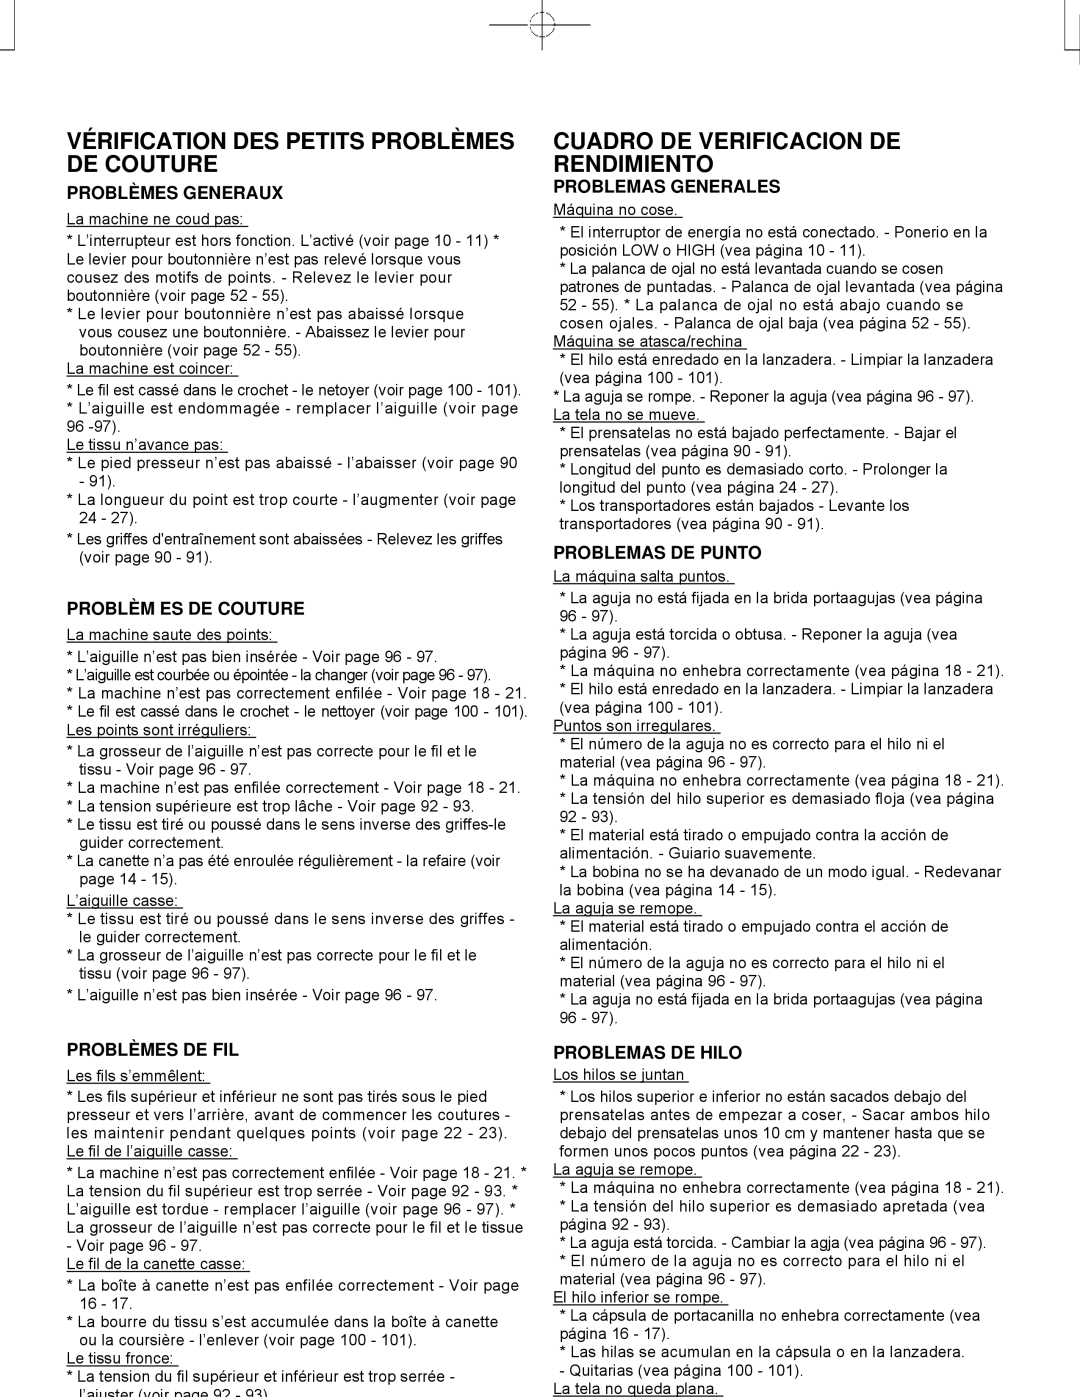 Singer CE-150 instruction manual Vérification DES Petits Problèmes DE Couture, Cuadro DE Verificacion DE Rendimiento 